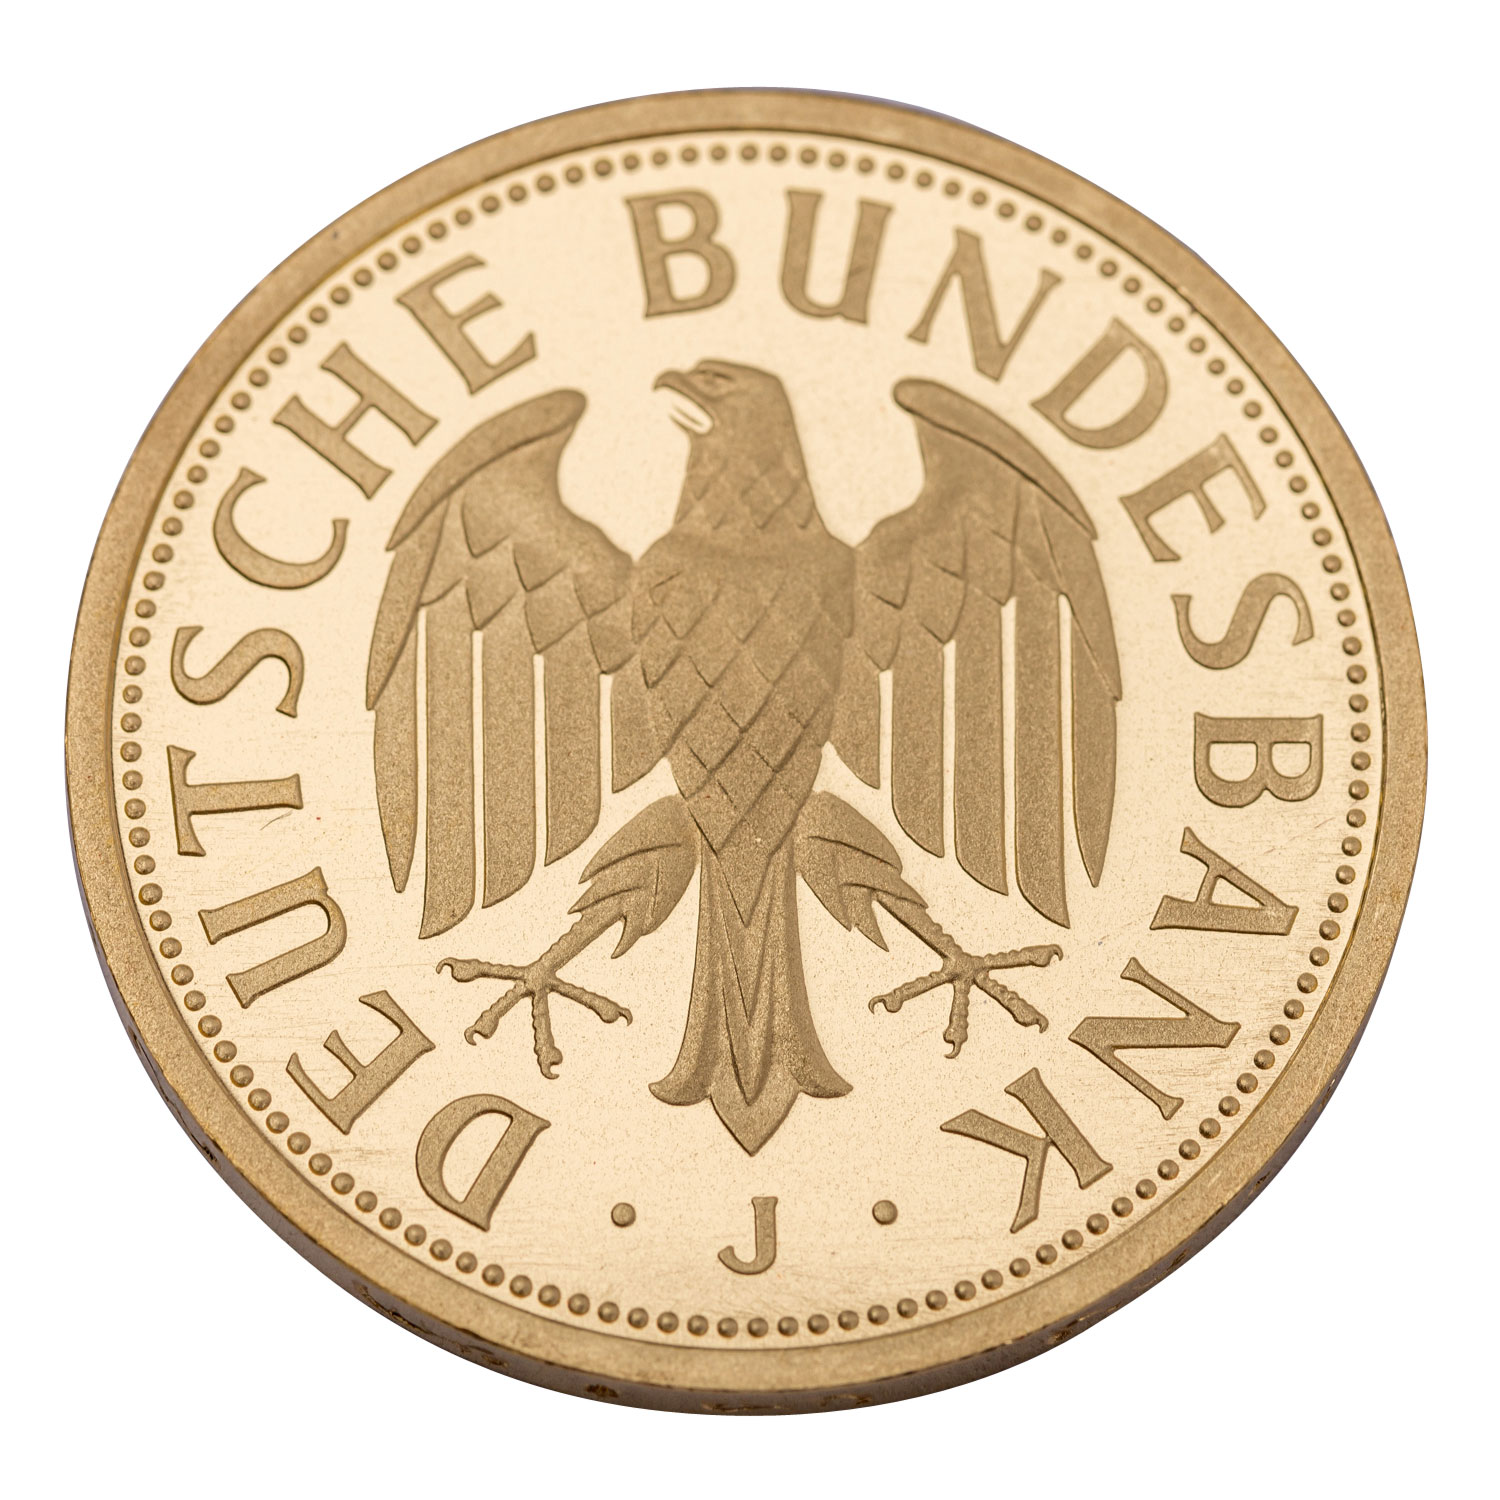 BRD/GOLD - 1 Deutsche Mark 2001 J. J.481. - Bild 2 aus 2